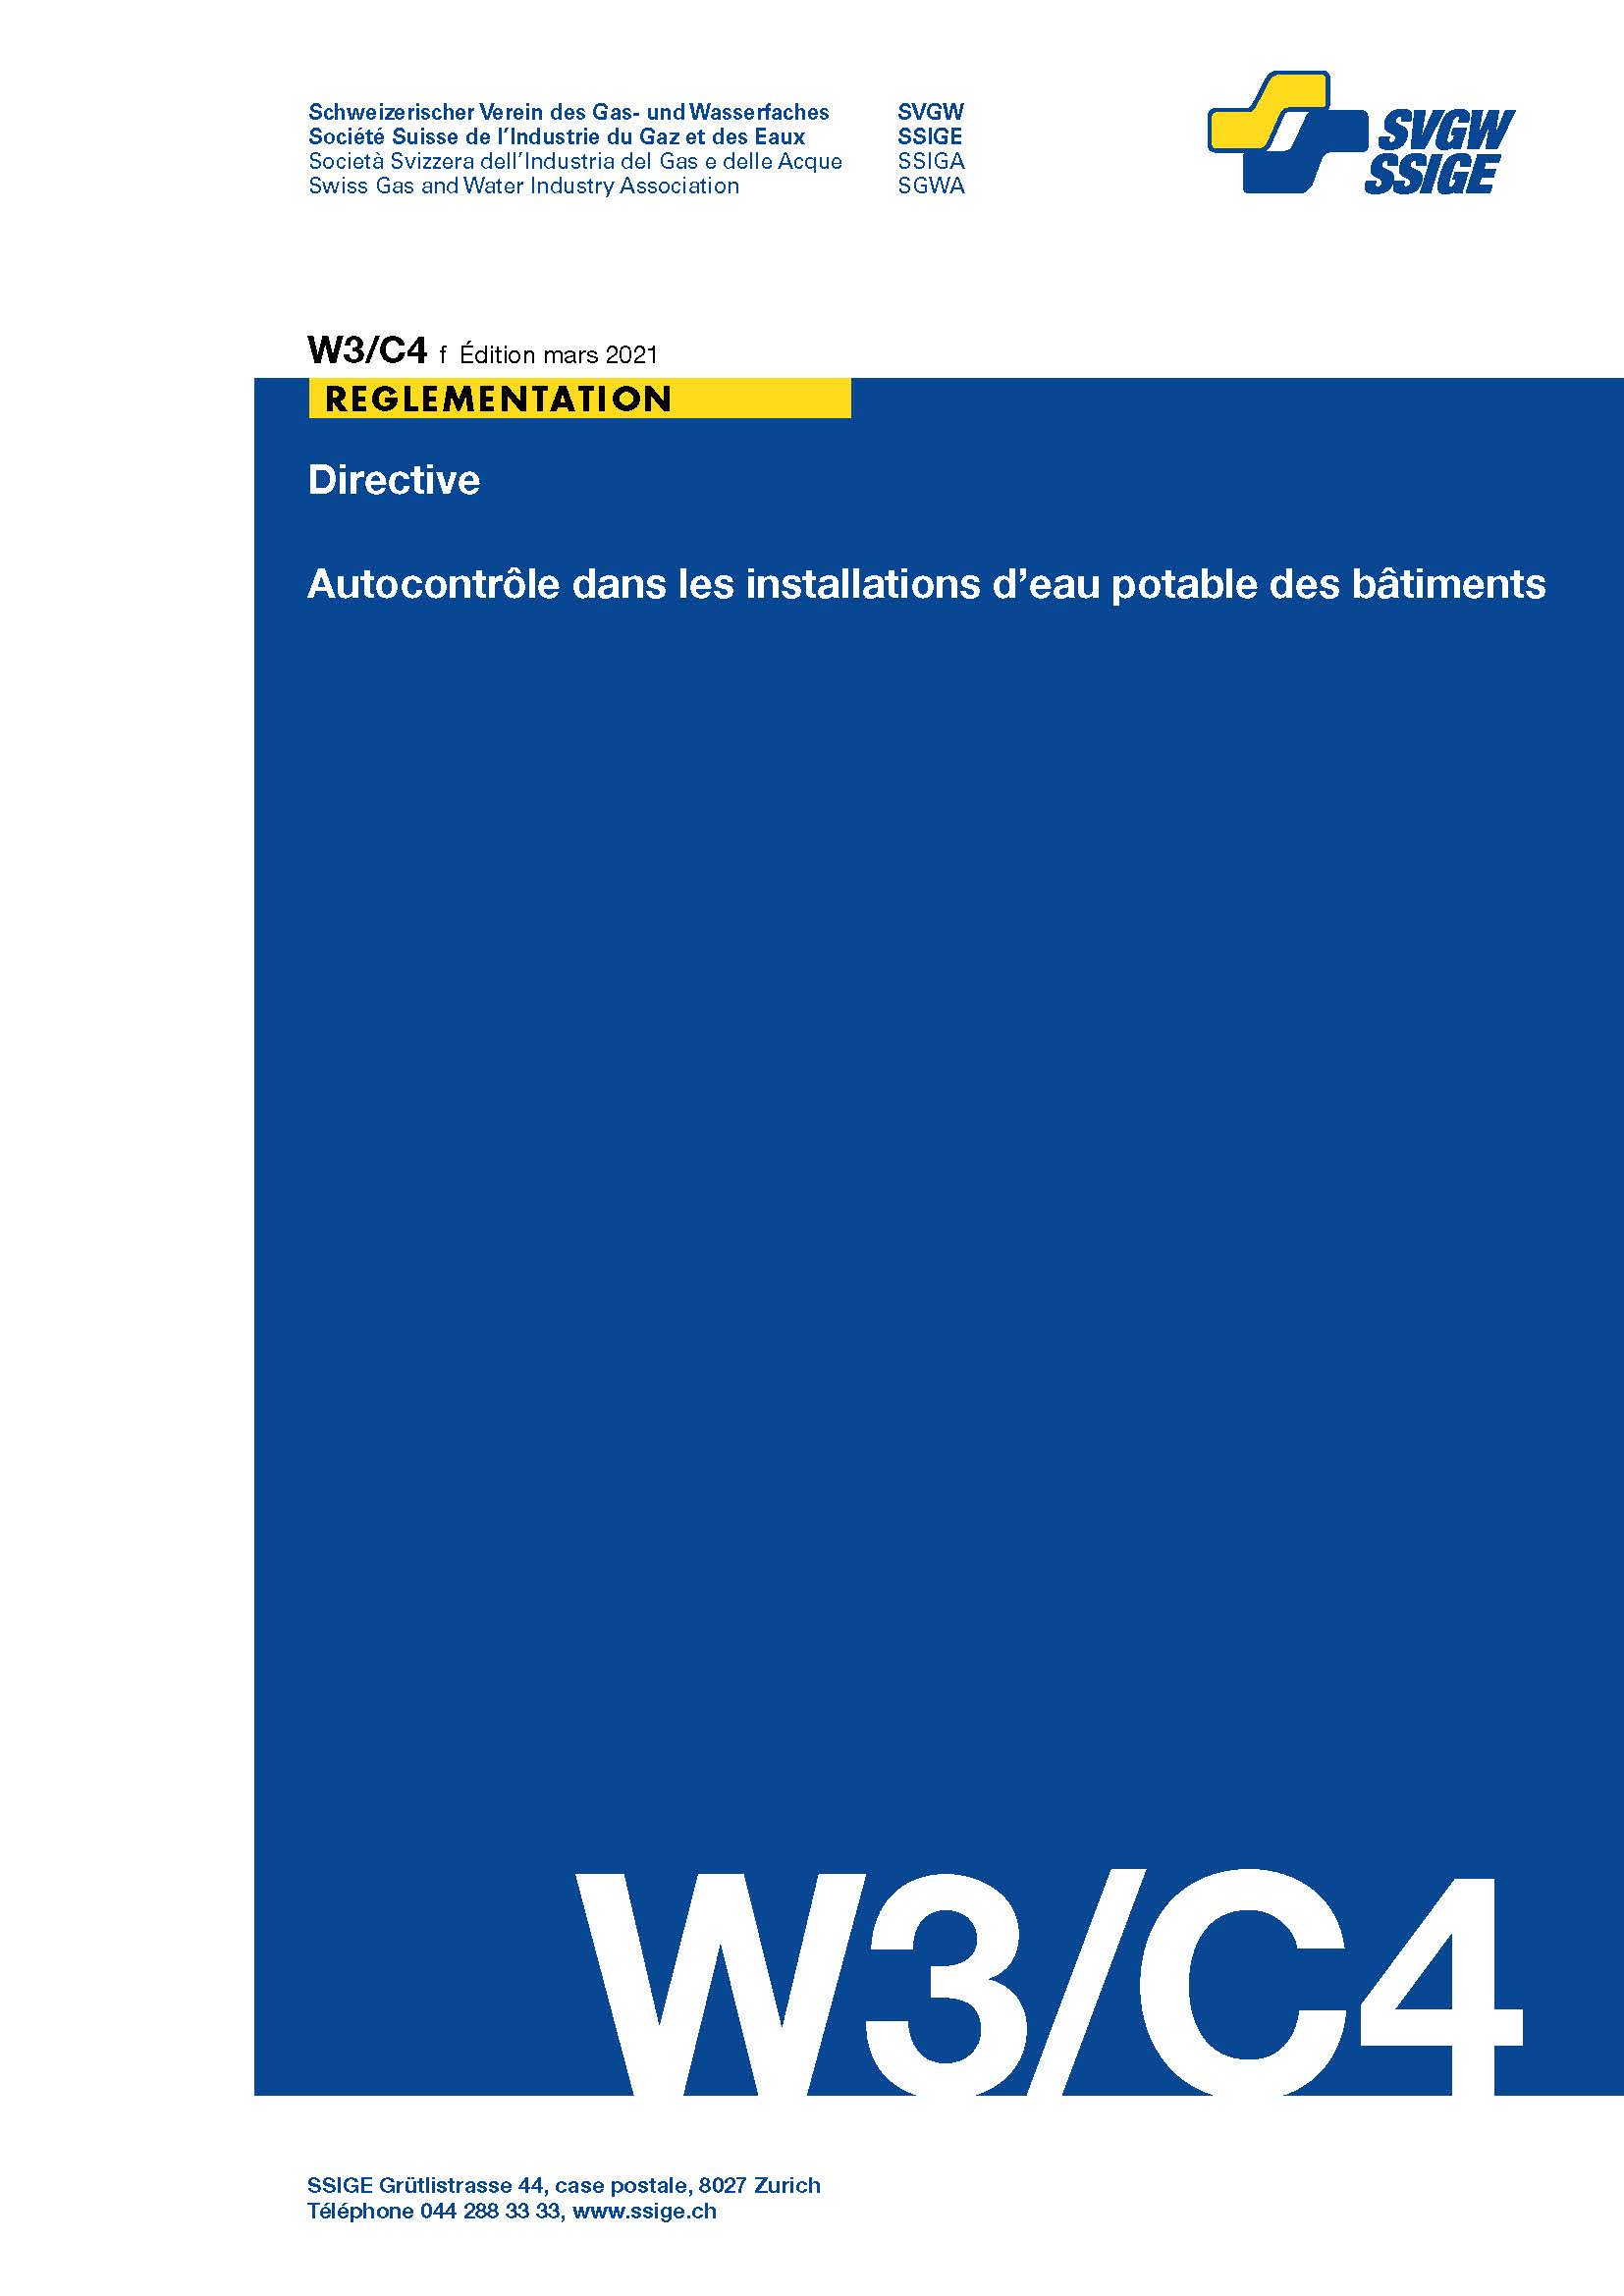 W3/C4 f Directive; Autocontrôle dans les installations d'eau potable des bâtiments (2)